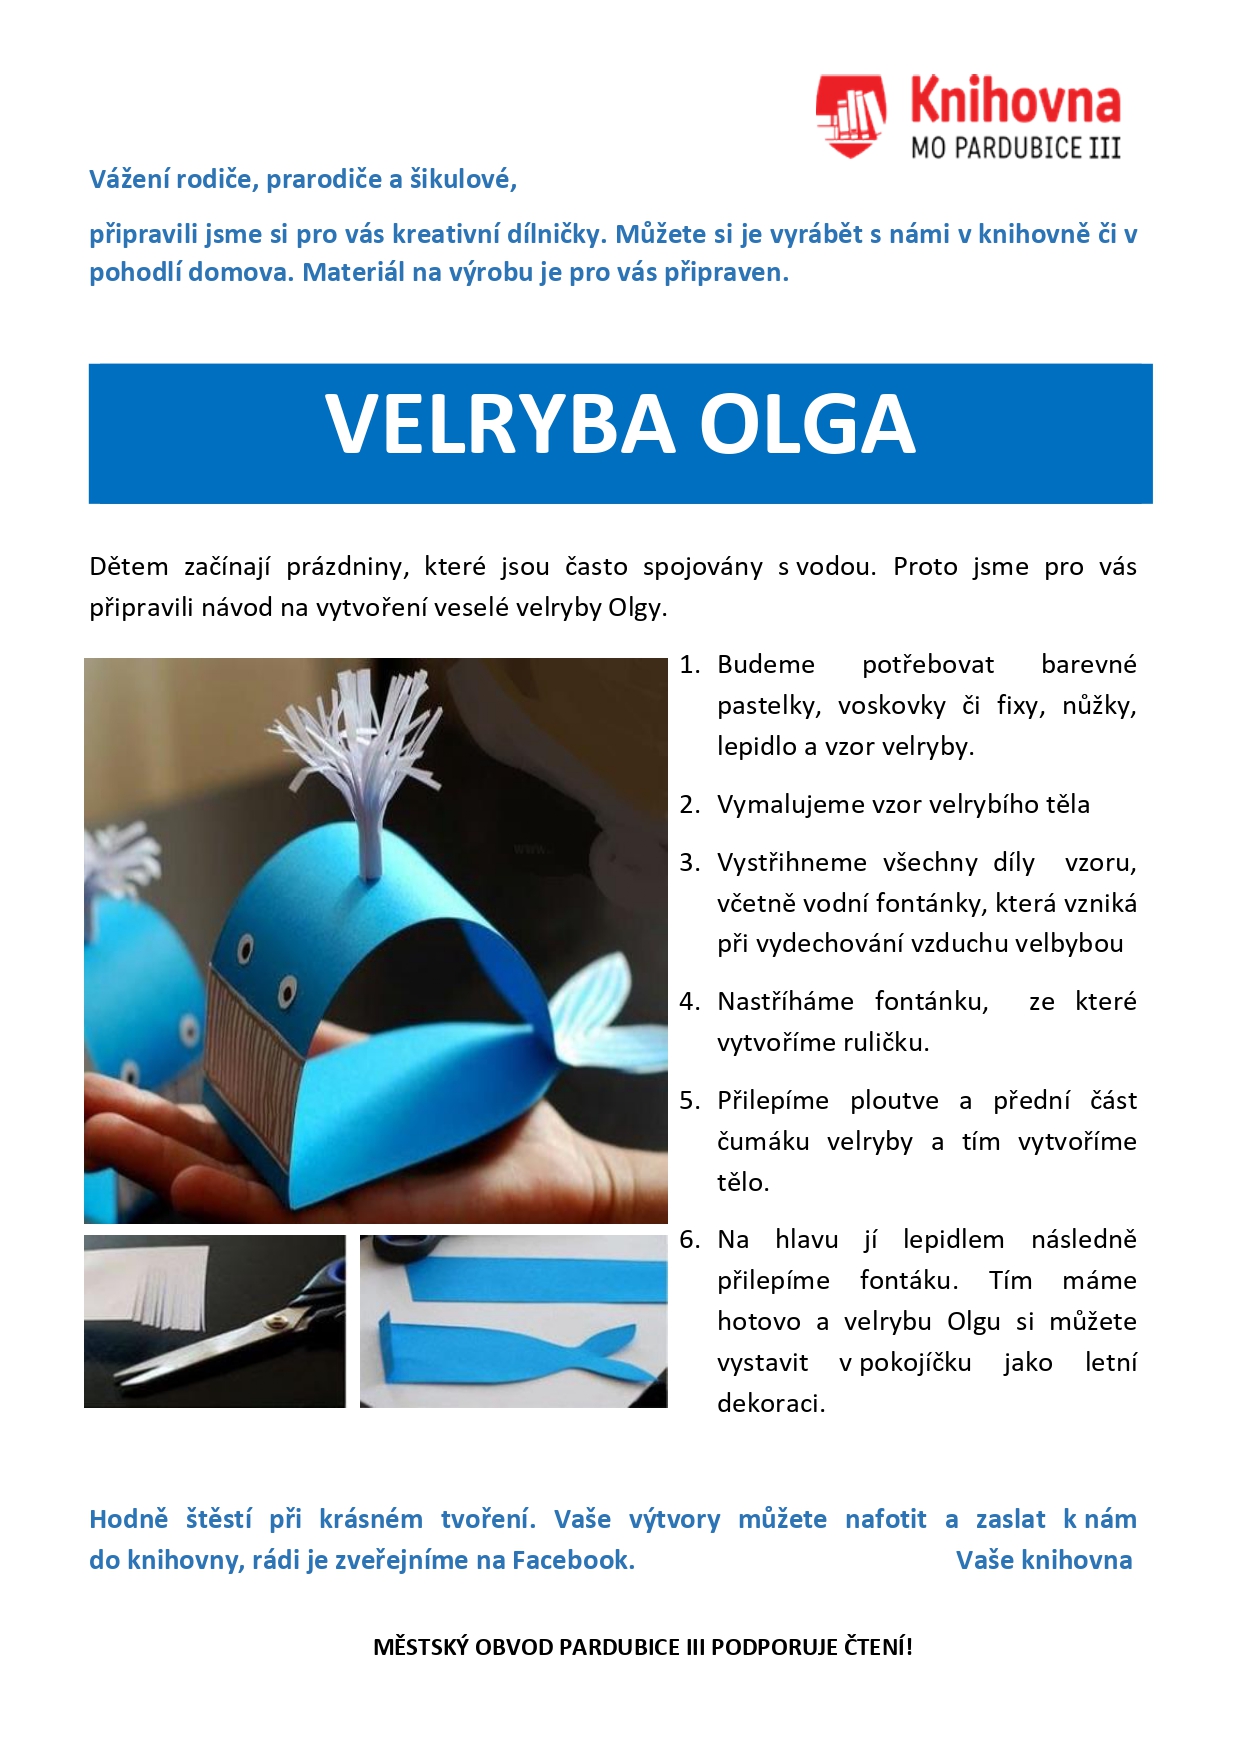 Velryby Olga